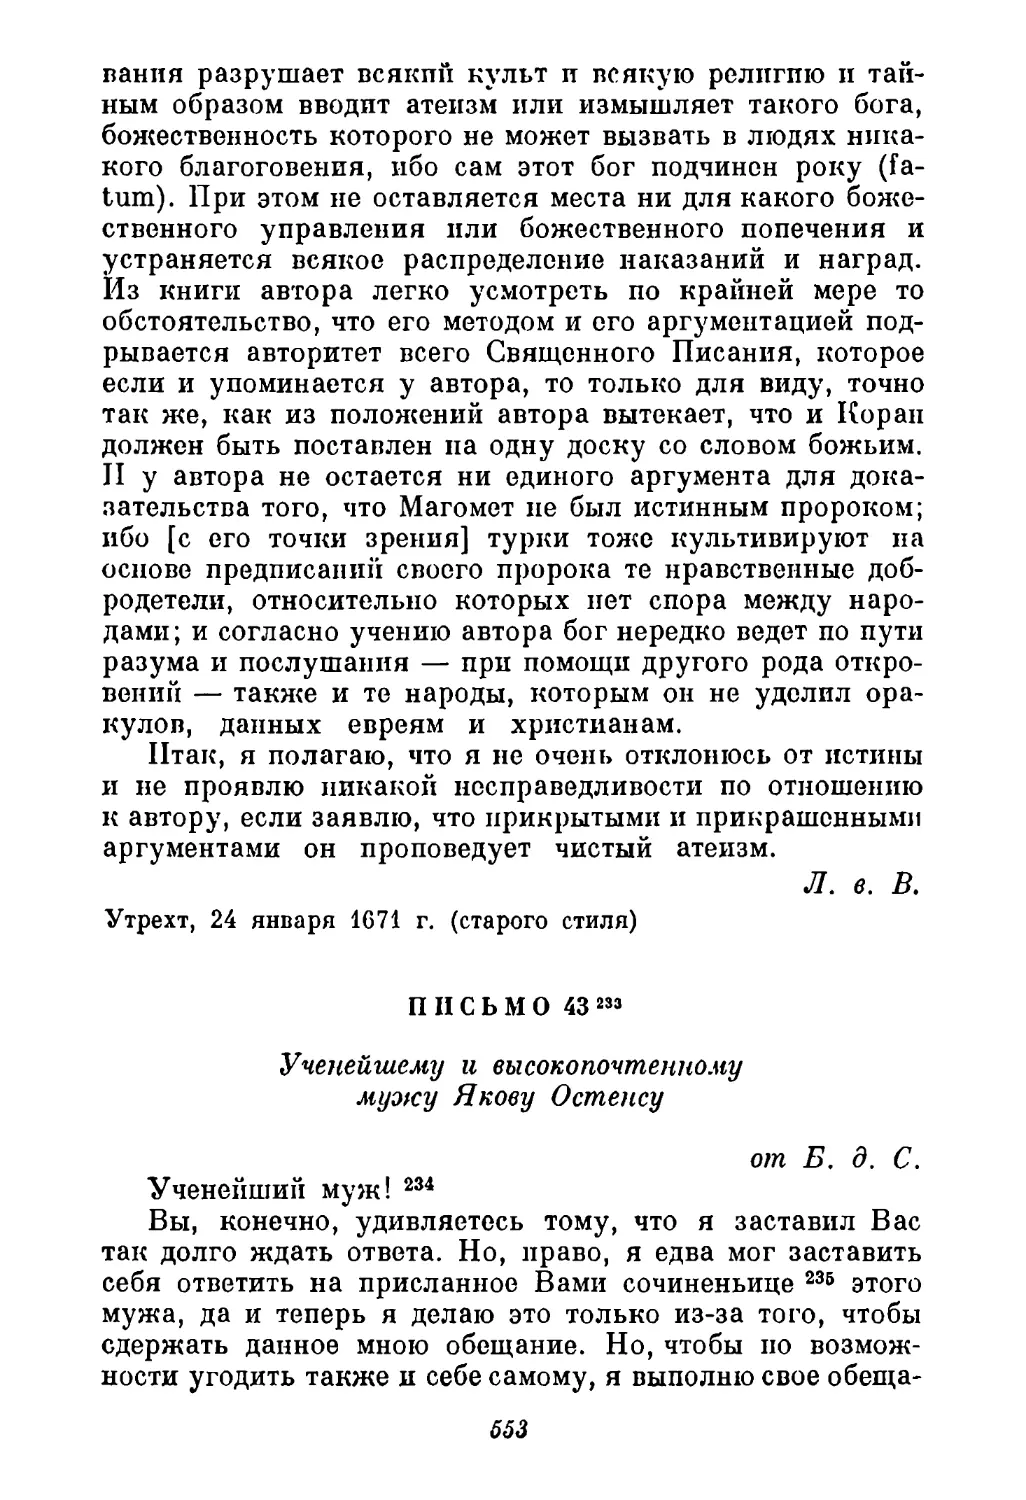 43. Спиноза Остенсу [1671 г.]